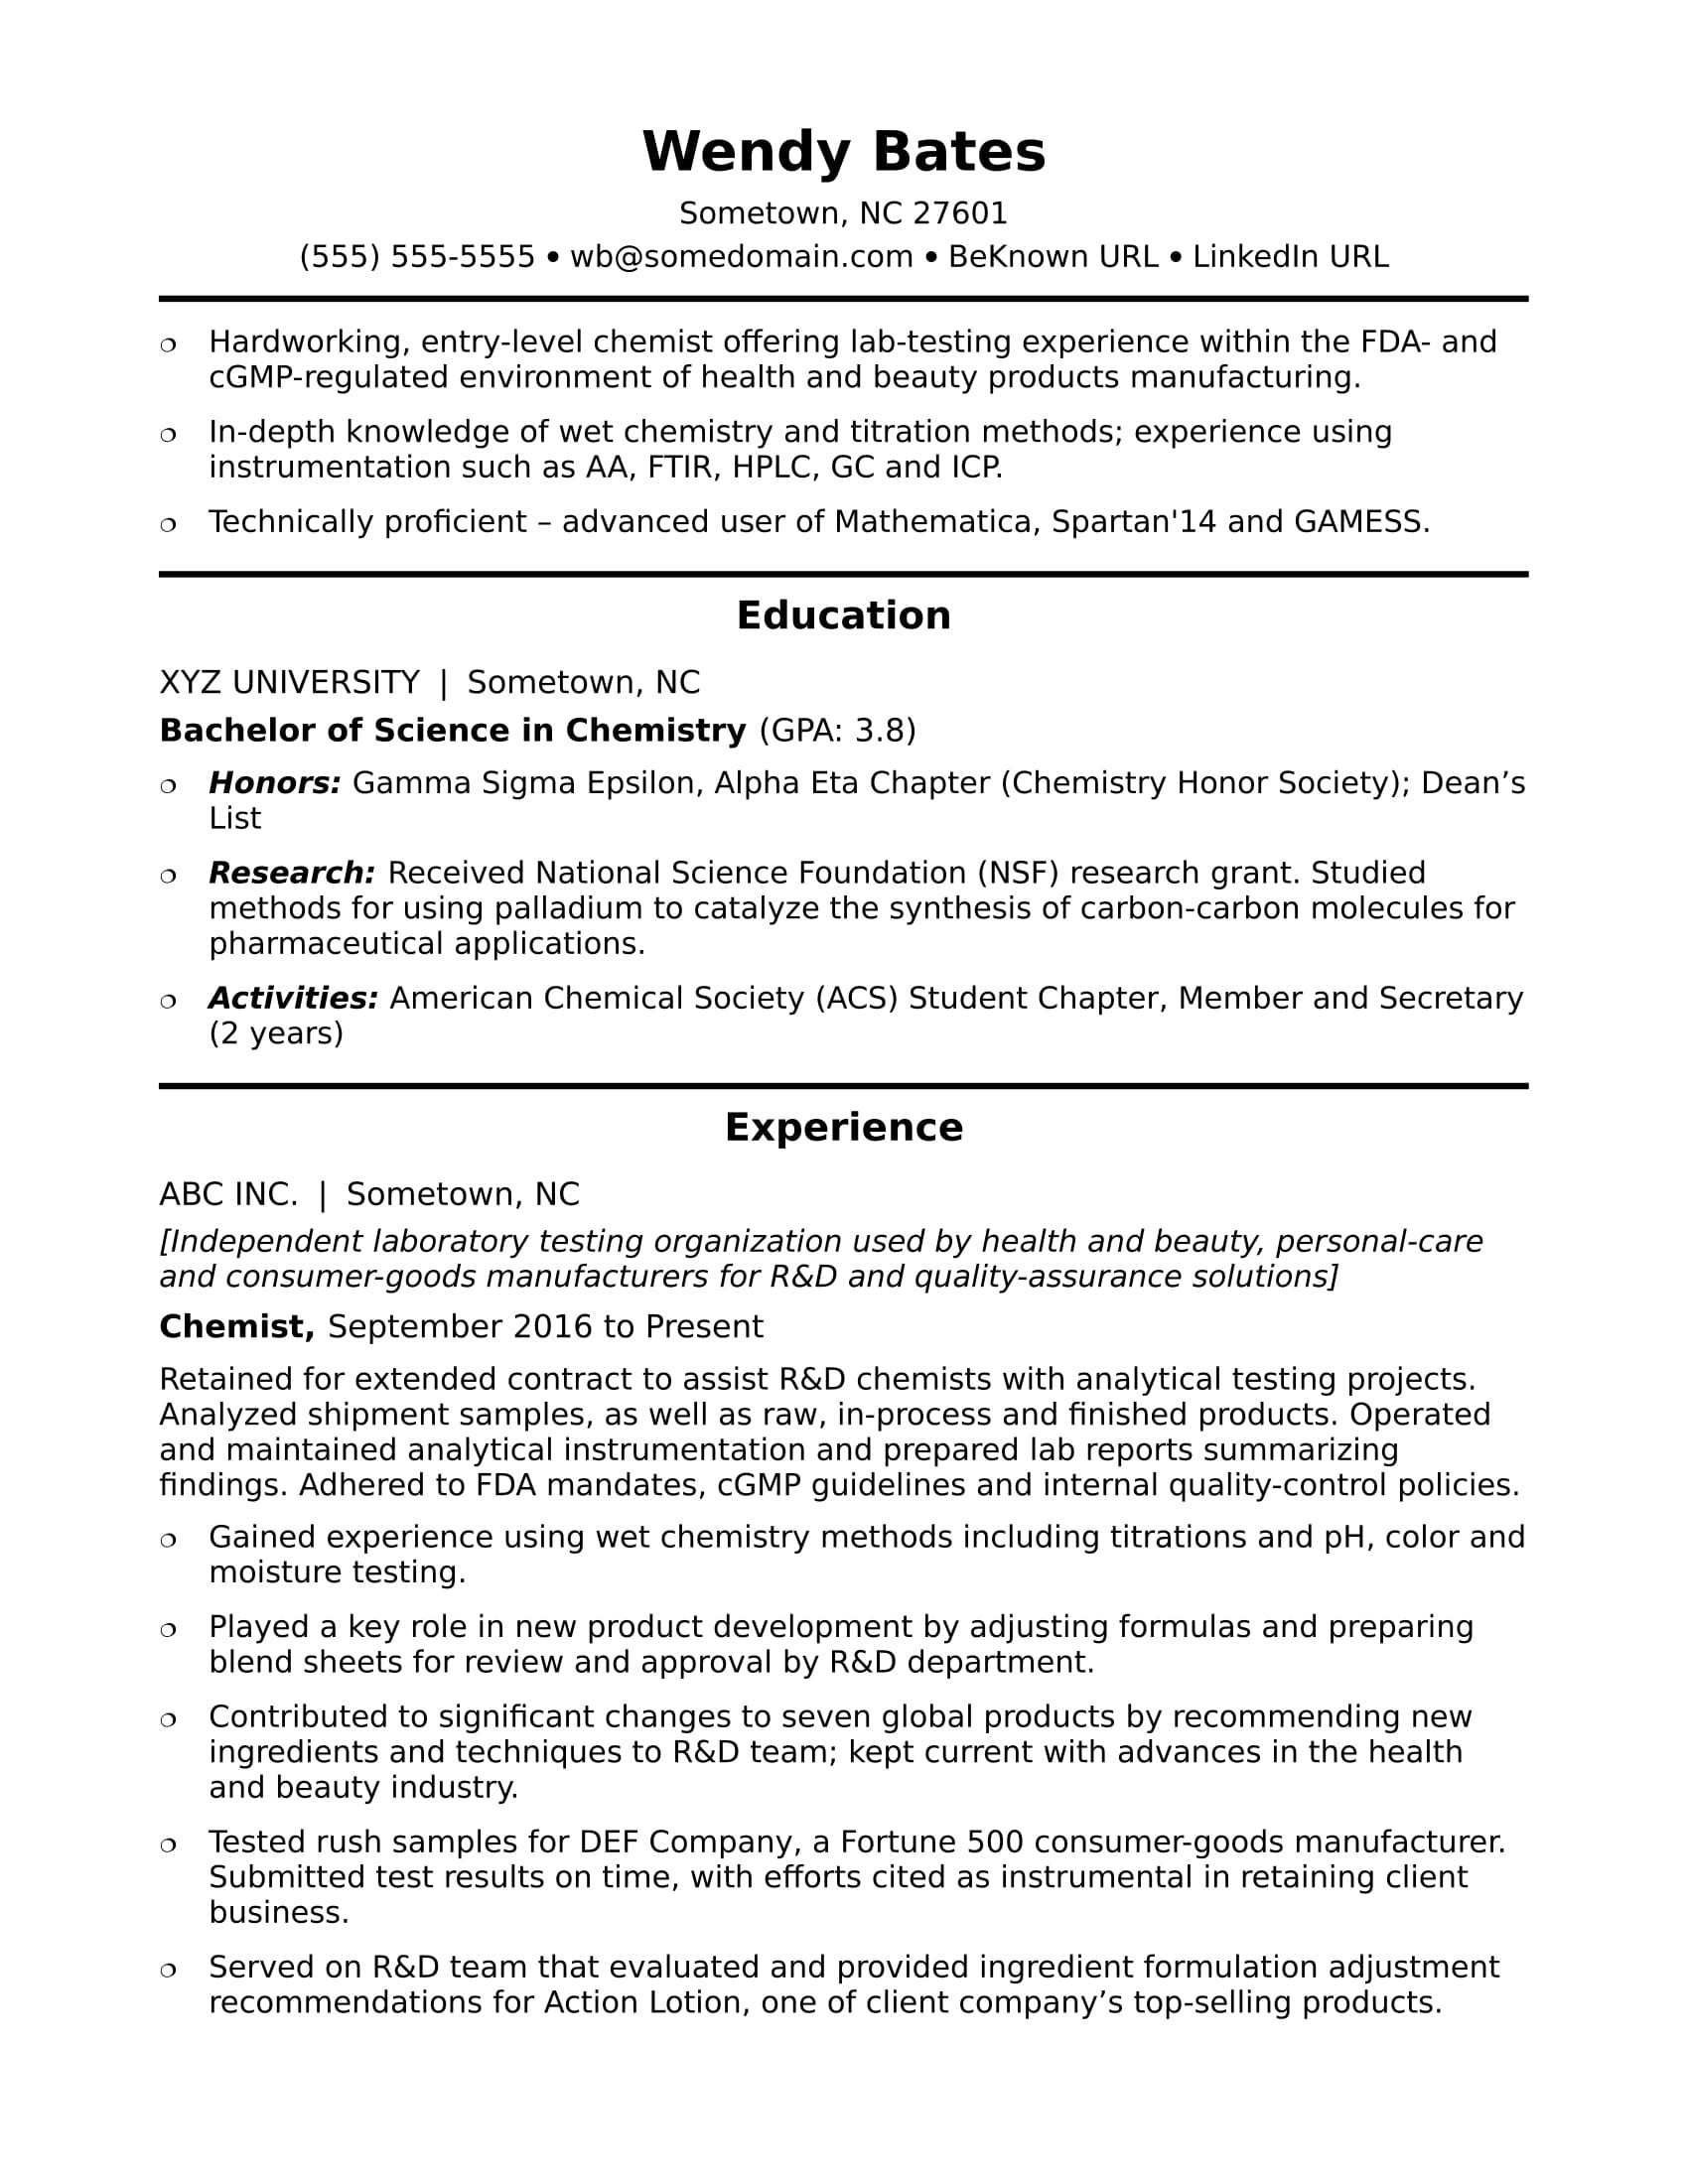 Sample Resume From International Student for Entry Level Jobs Entry-level Chemist Resume Sample Monster.com